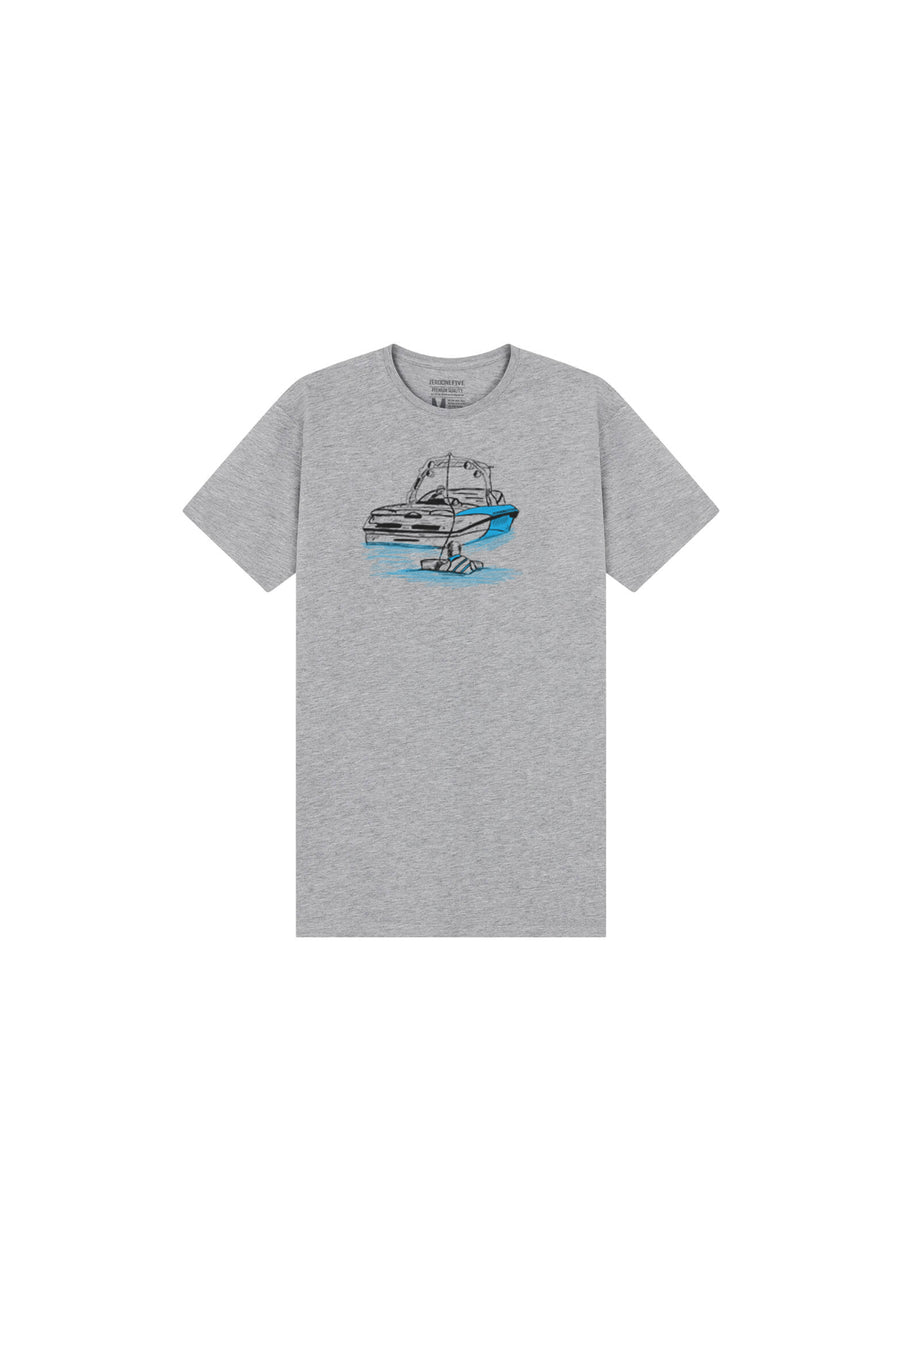 Kids' Lake T-Shirt Grey